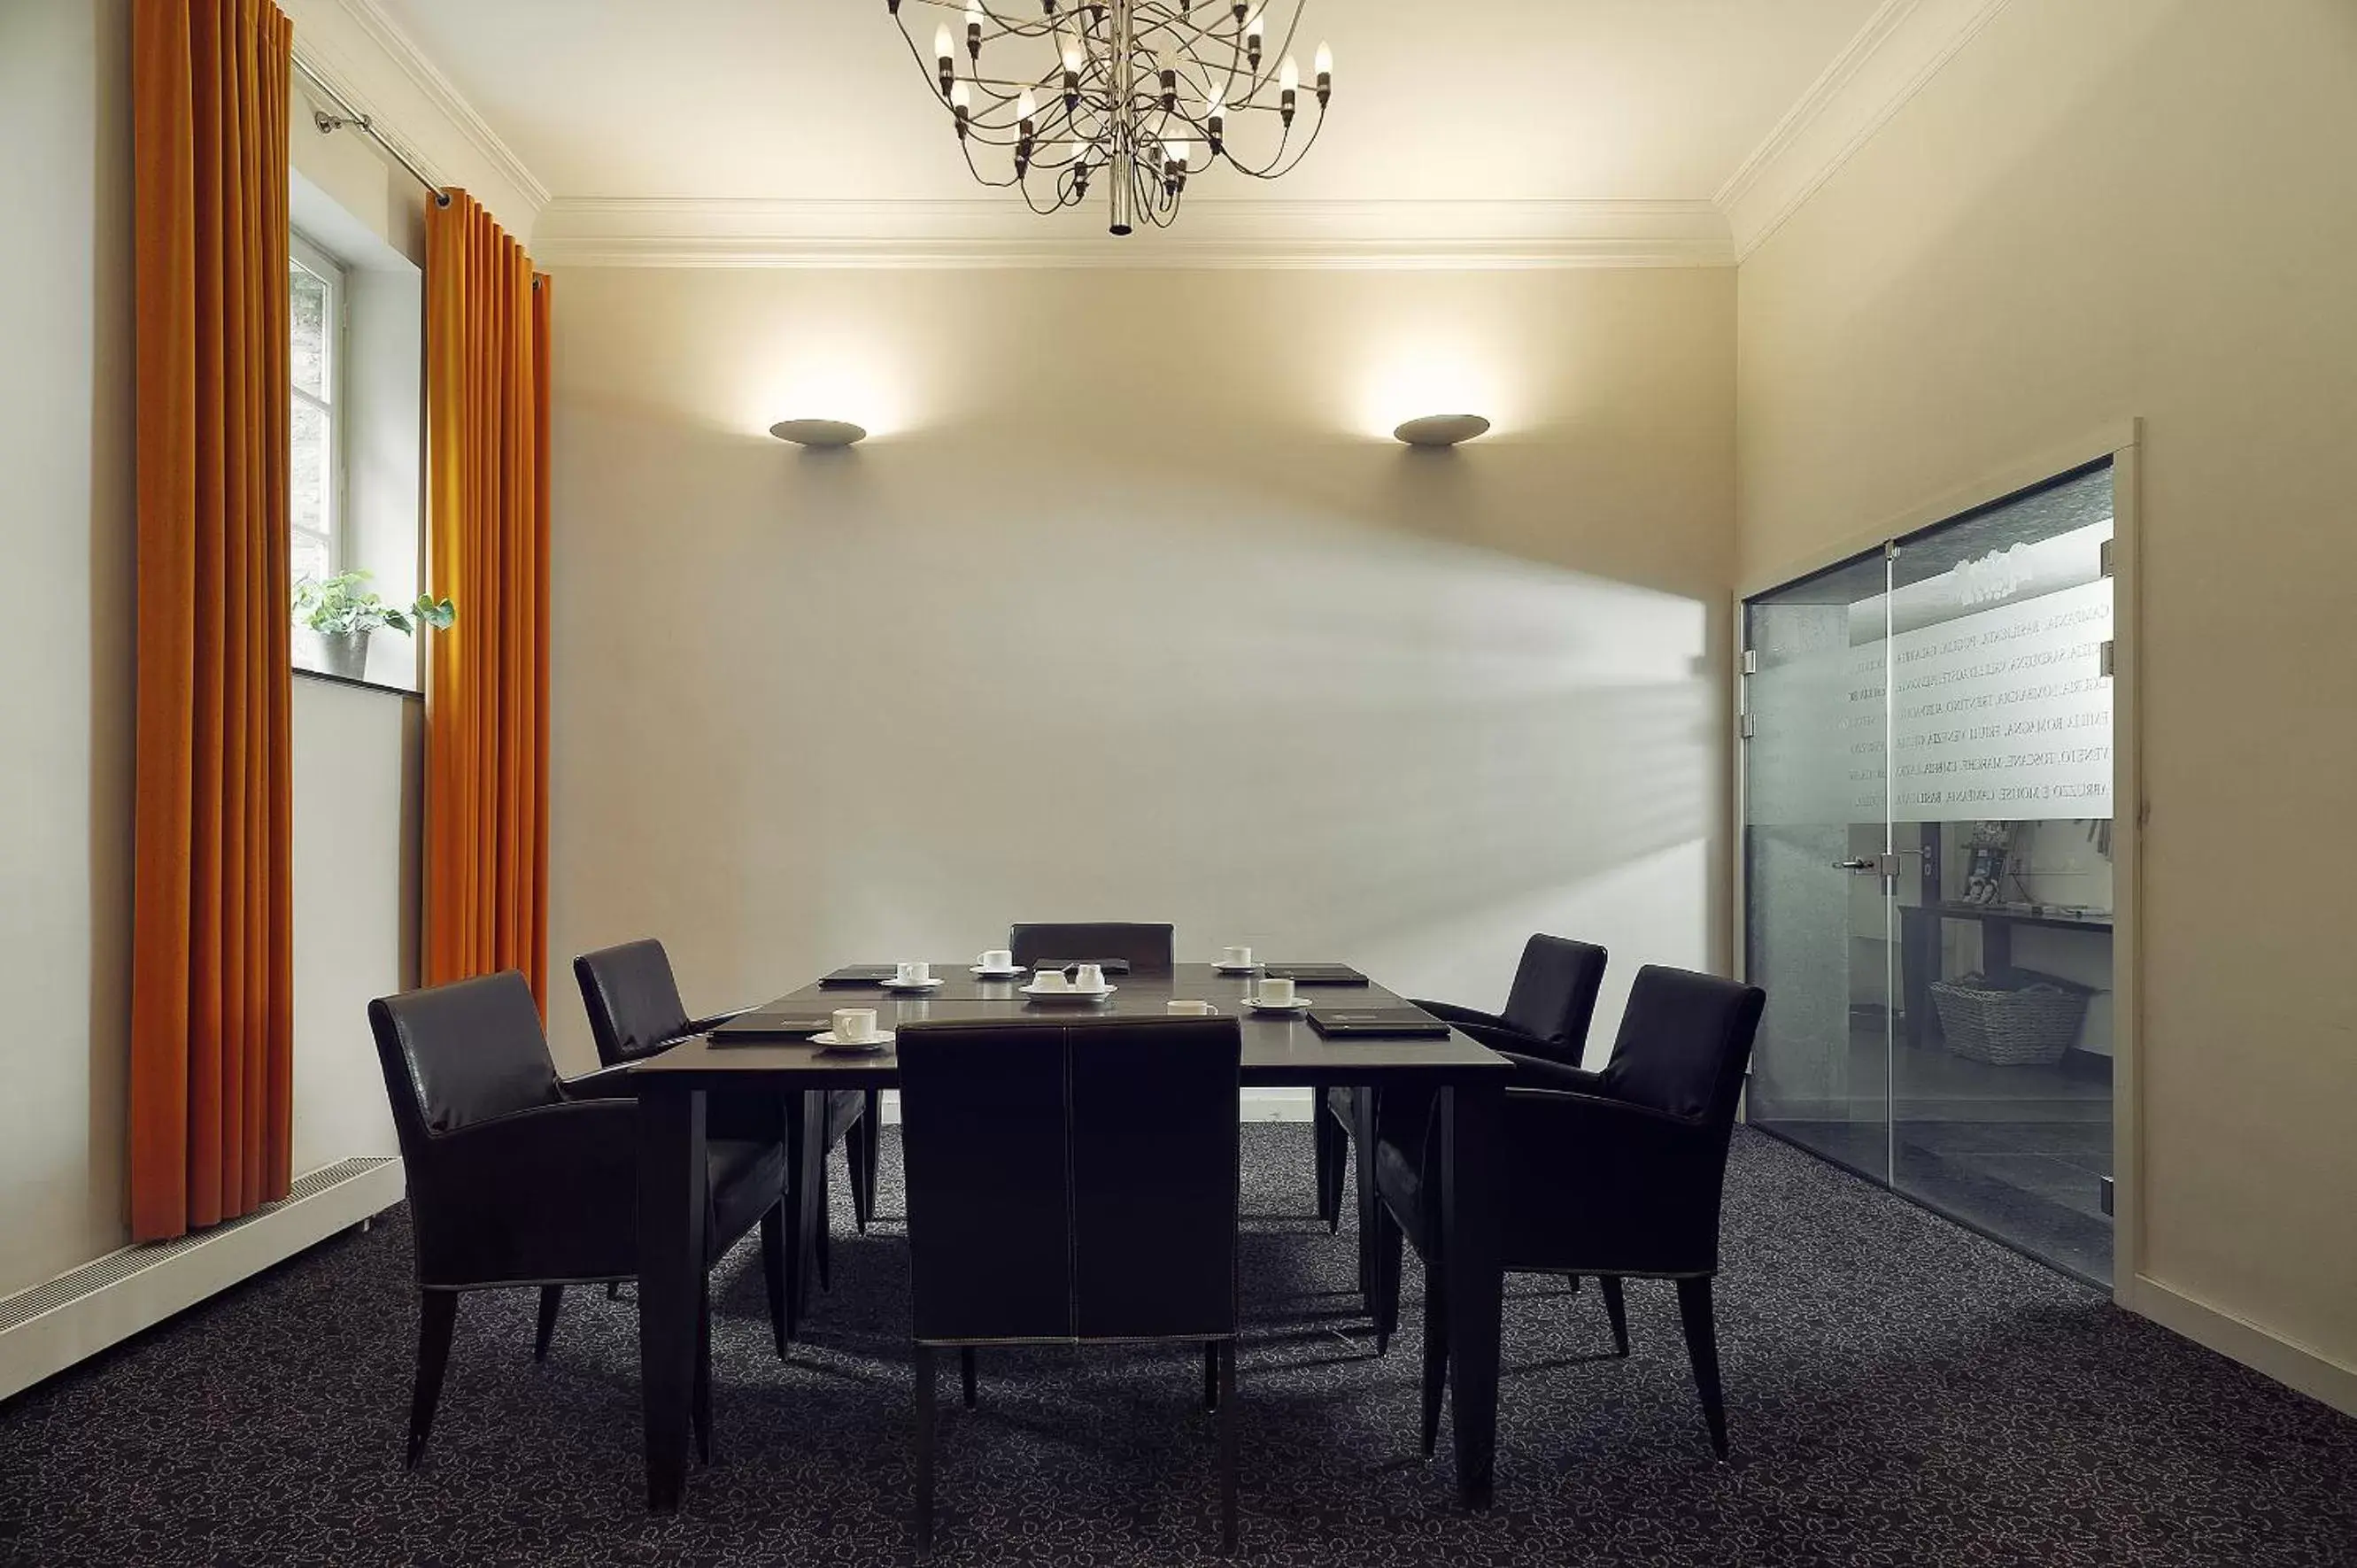 Banquet/Function facilities, Dining Area in Hotel- en Restaurant Kasteel Elsloo